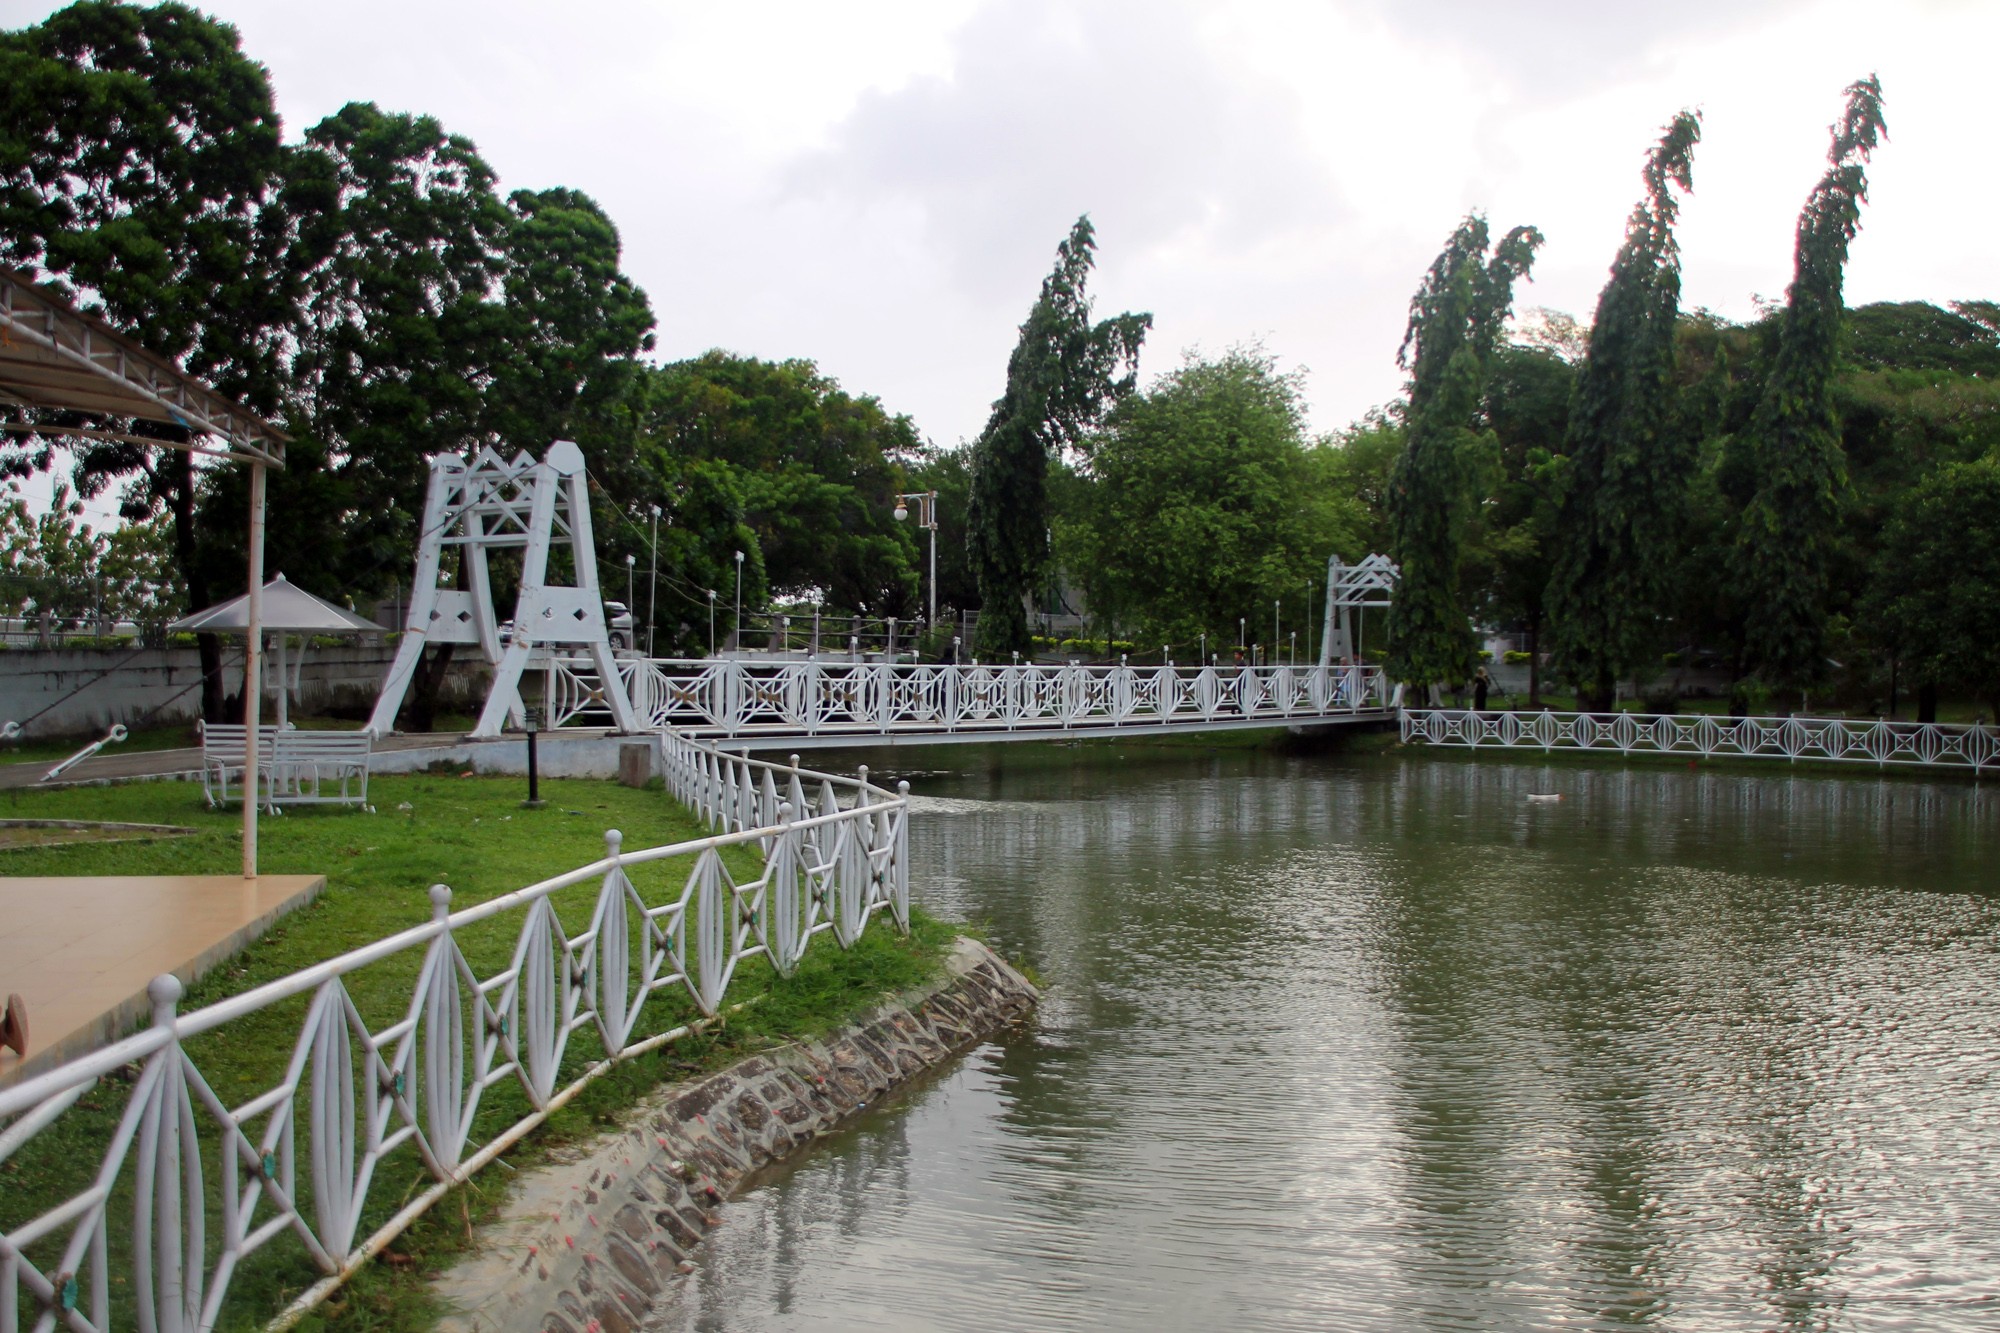 Taman ini merupakan sebagian kecil dari jejak sejarah era kejayaan Kesultanan Aceh